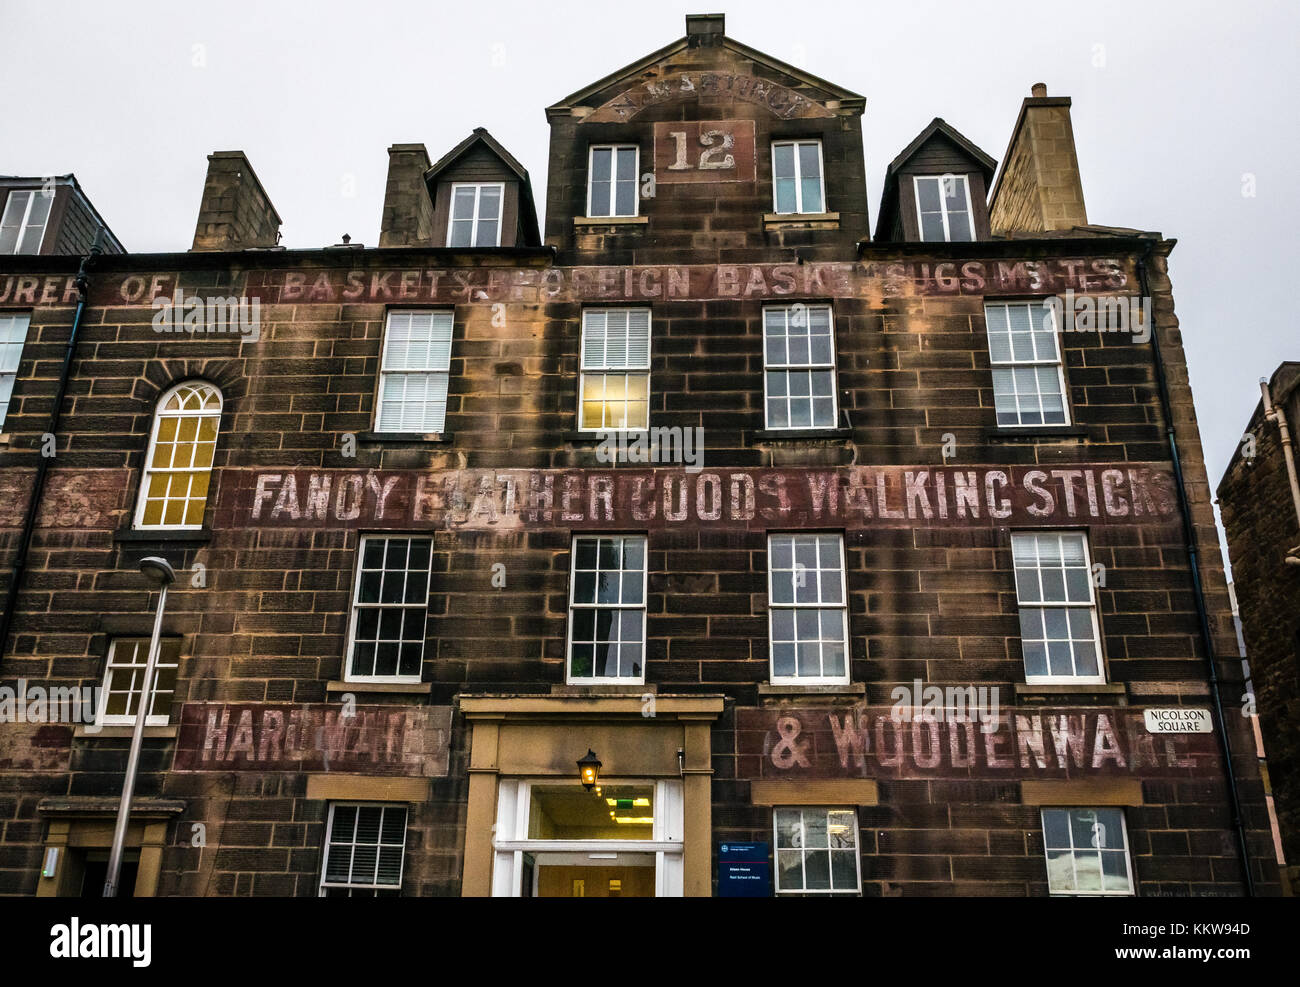 Università di Edimburgo, Alison House, Reid Scuola di musica, Georgian town house con il vecchio hardware shop ghost pubblicità lettering oggettistica Foto Stock